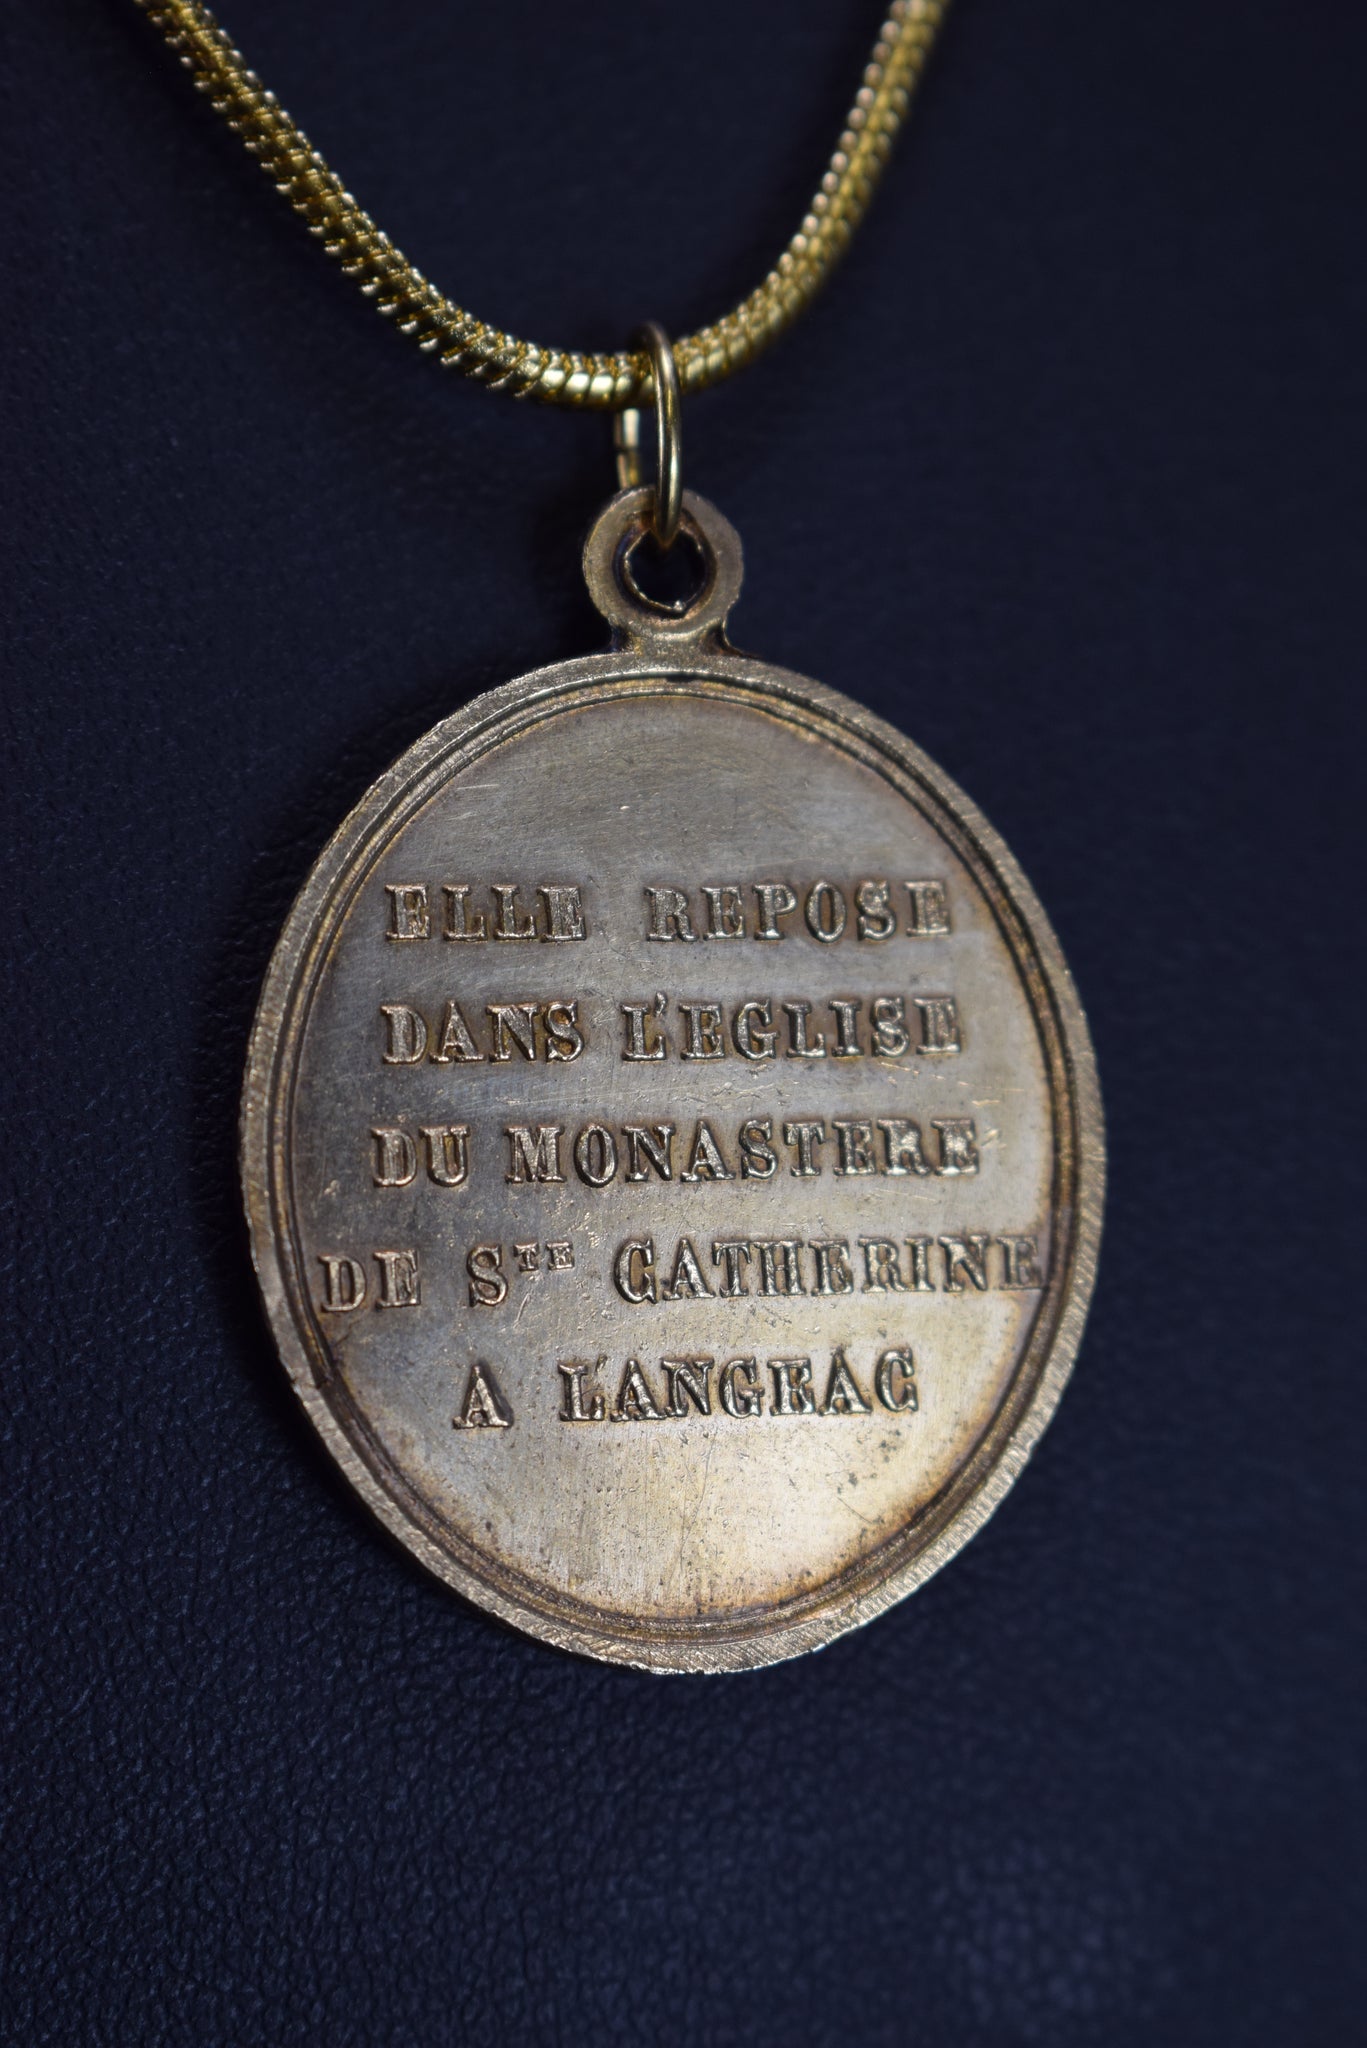 Saint Agnes Medal